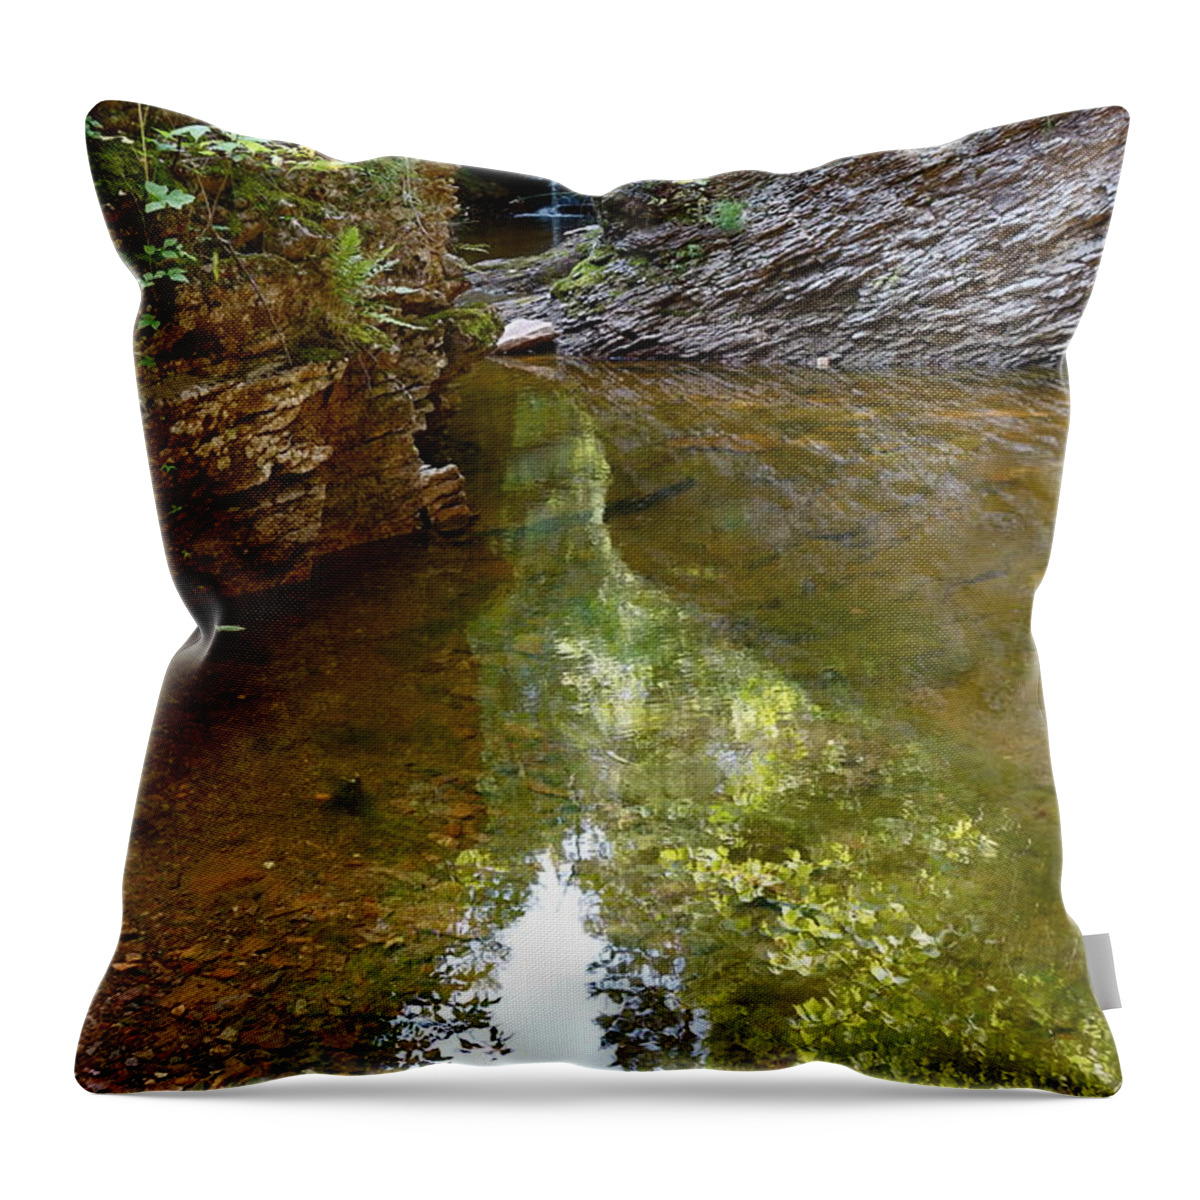 Gauthier Creek Throw Pillow featuring the photograph Hidden Gem on Gauthier Creek by Sandra Updyke